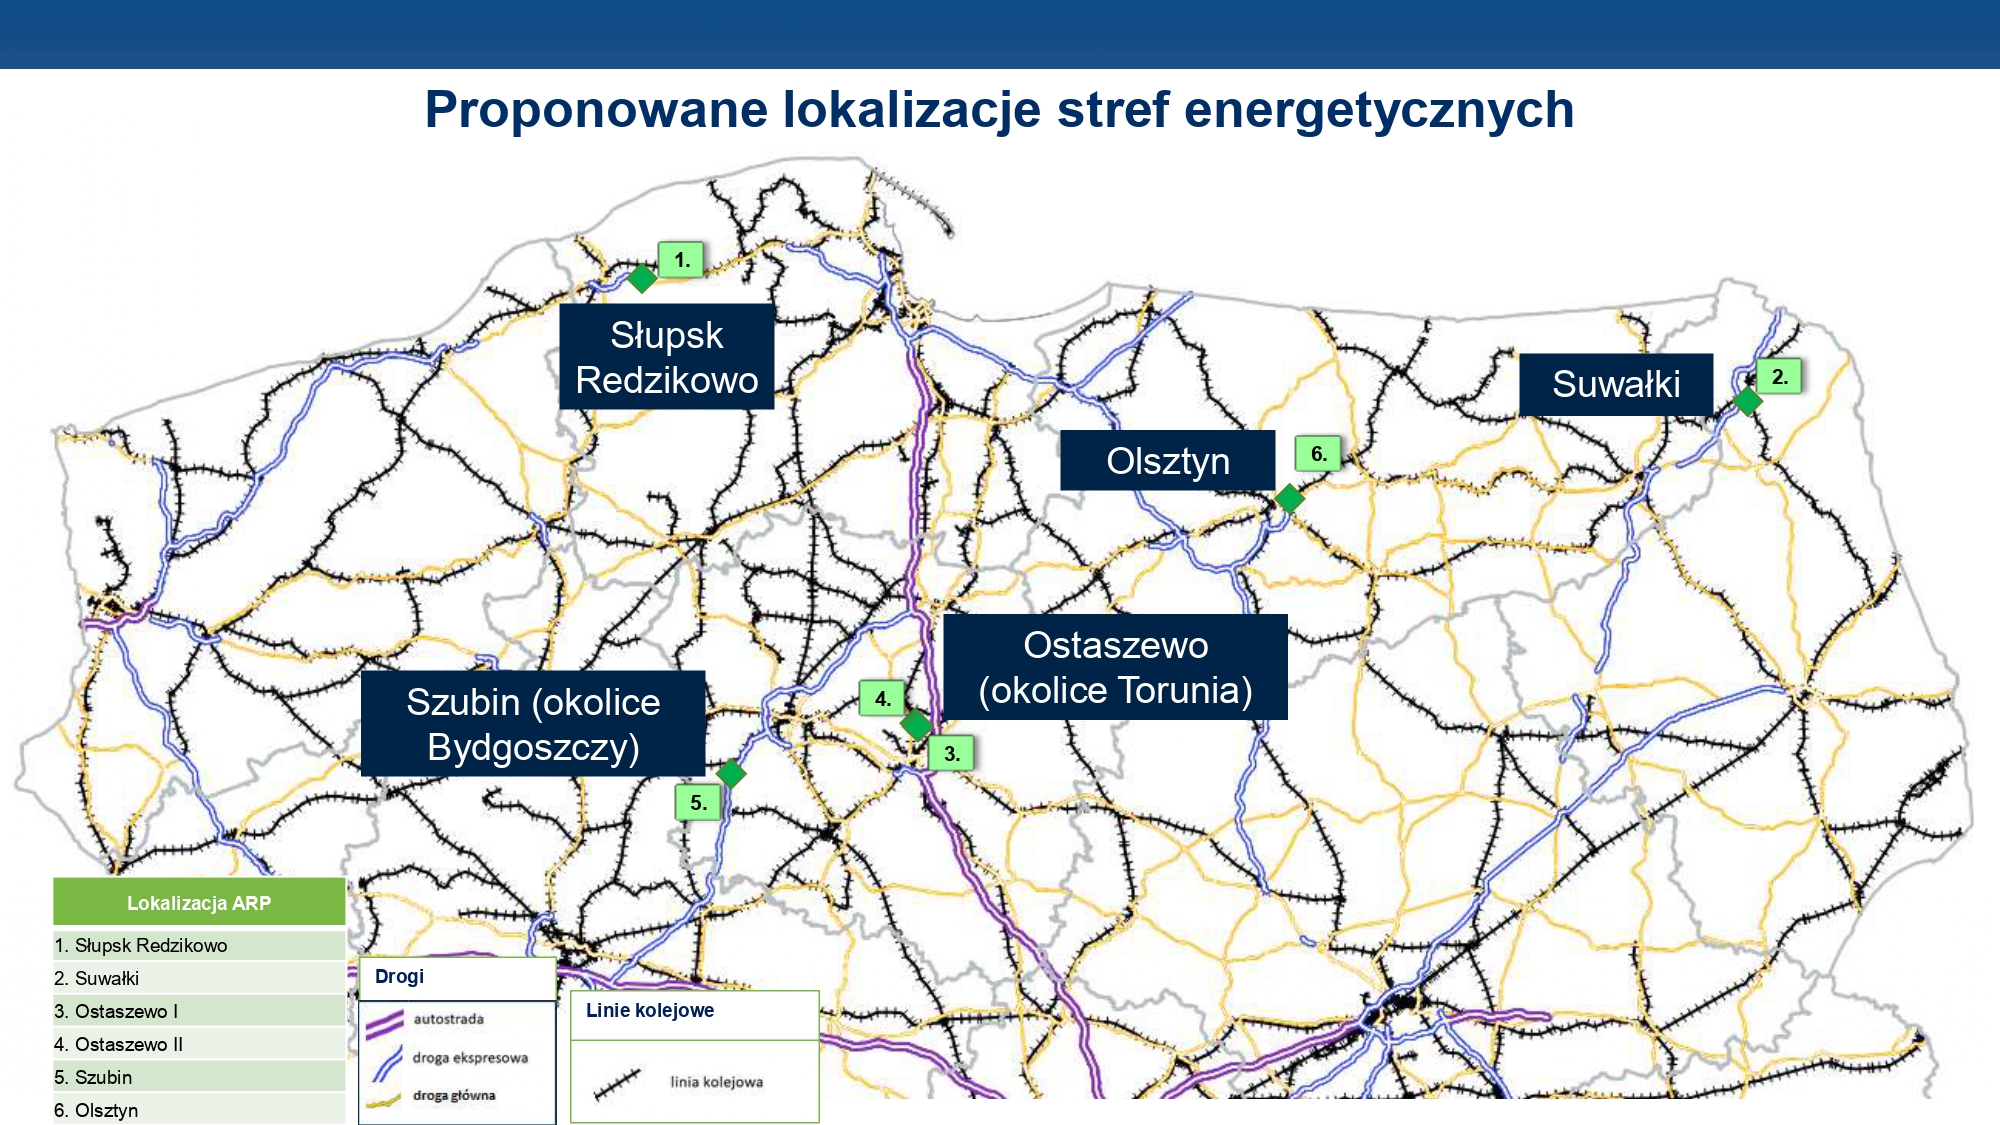 Konsekwentnie zwiększamy atrakcyjność terenów pod nowe inwestycje. Dlatego tym bardziej się cieszę, że jesteśmy w gronie sześciu lokalizacji specjalnych stref energetycznych w całej Polsce. Wzrost liczby inwestorów to przede wszystkim kolejne nowe miejsca pracy!